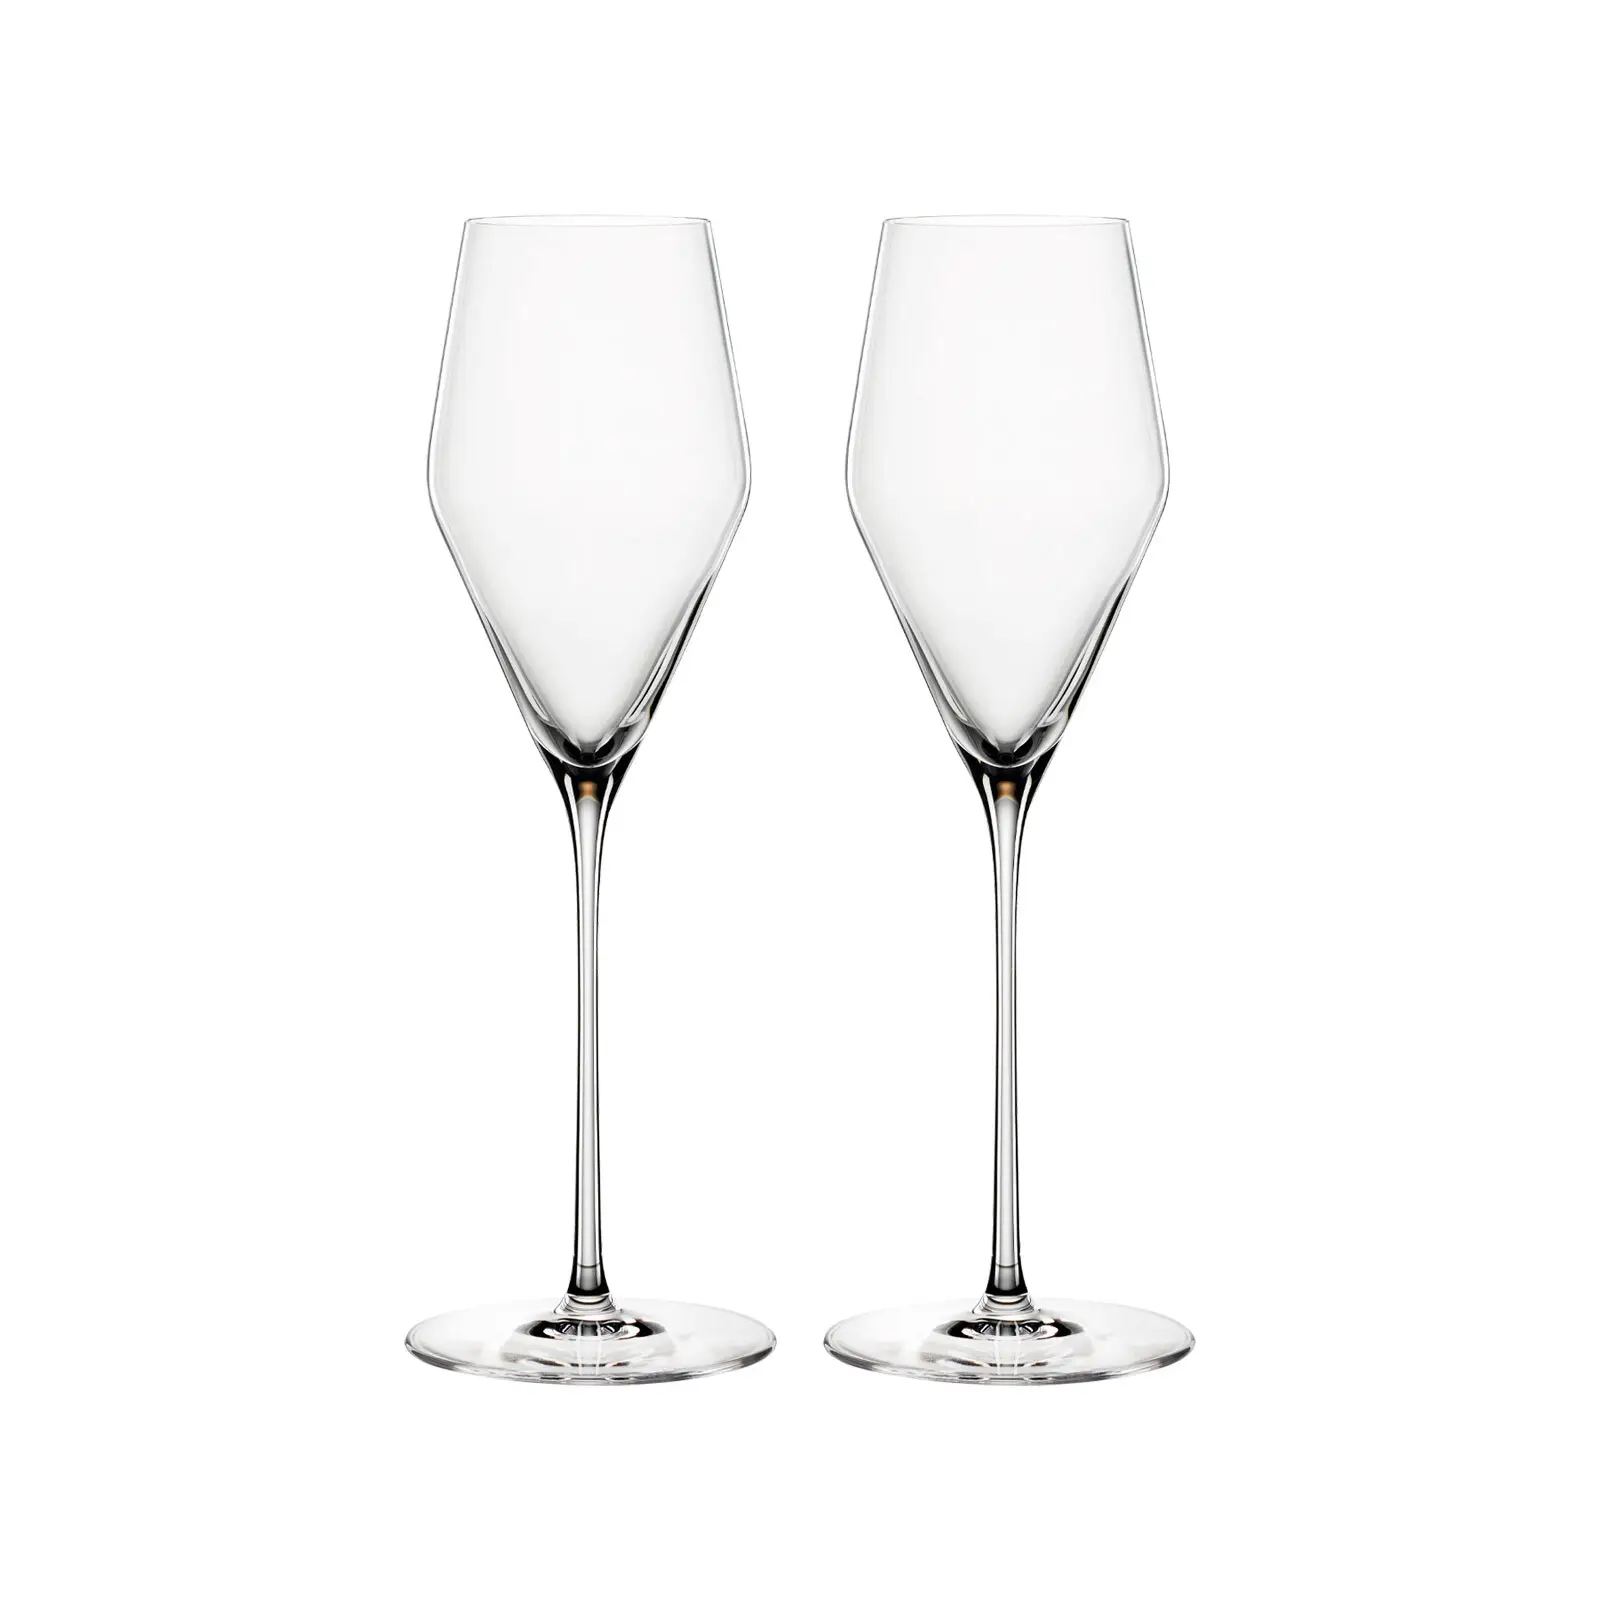 Champagnergl盲ser Definition 2er Set | Gläser-Sets